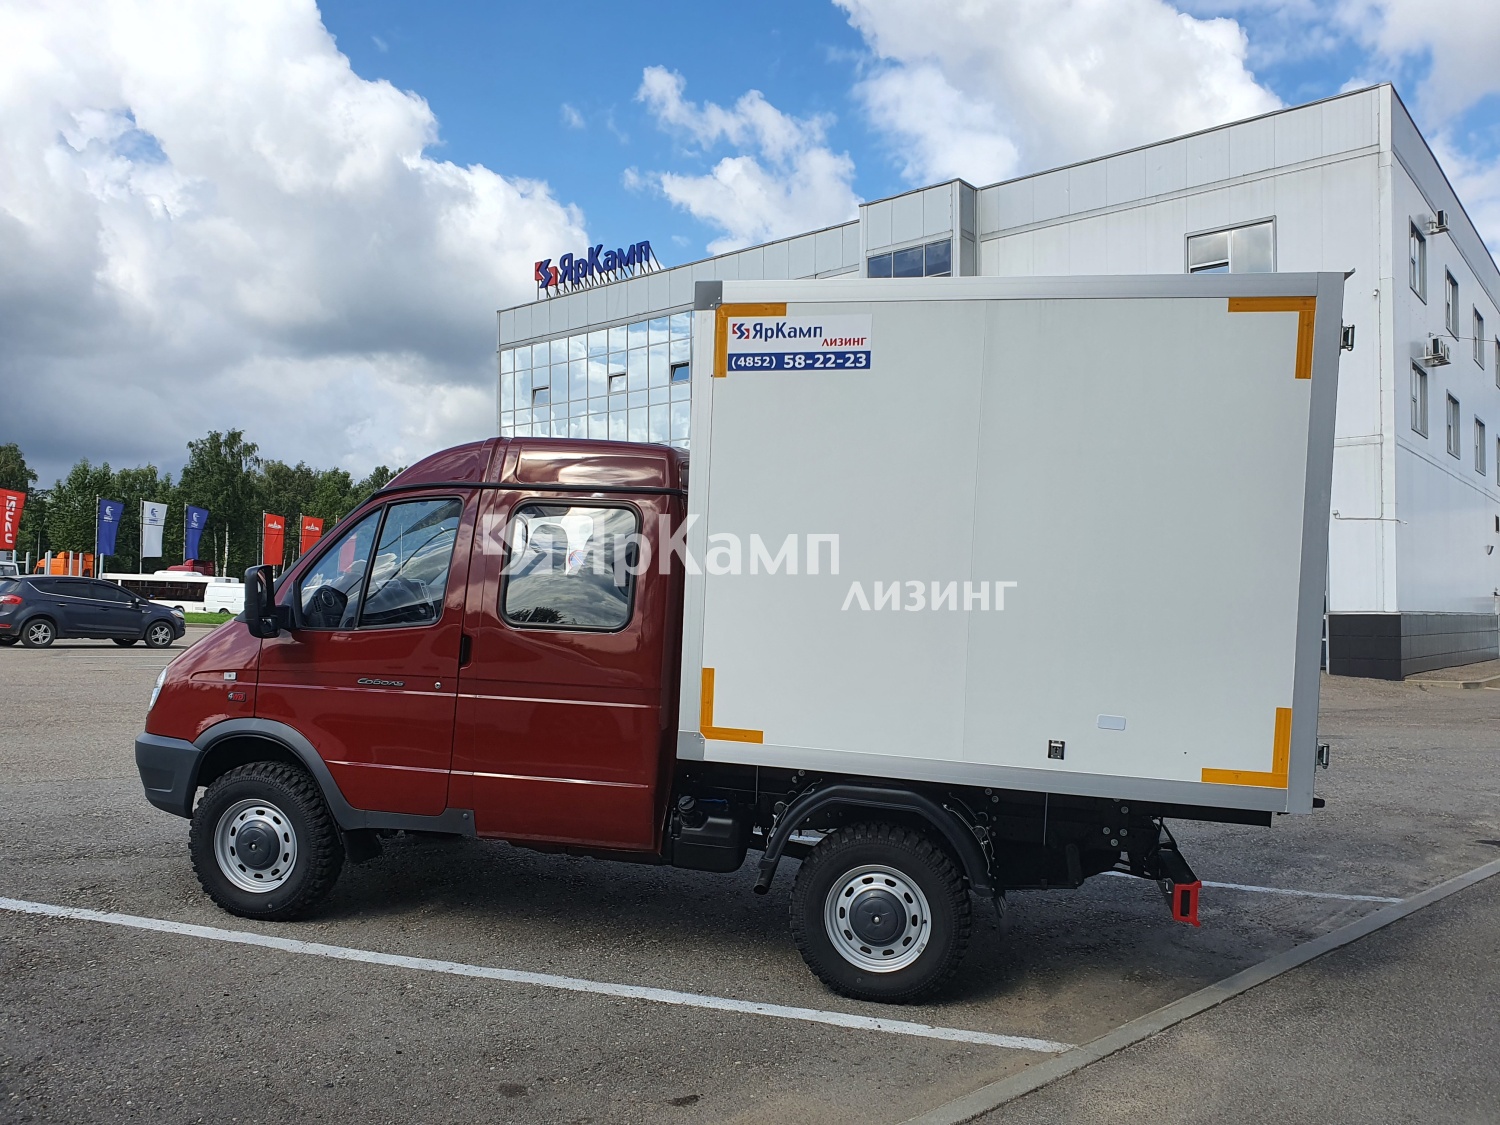 "ЯрКамп-Лизинг" осуществил передачу специализированного автомобиля Соболь БИЗНЕС с изотермическим фургоном в финансовую аренду